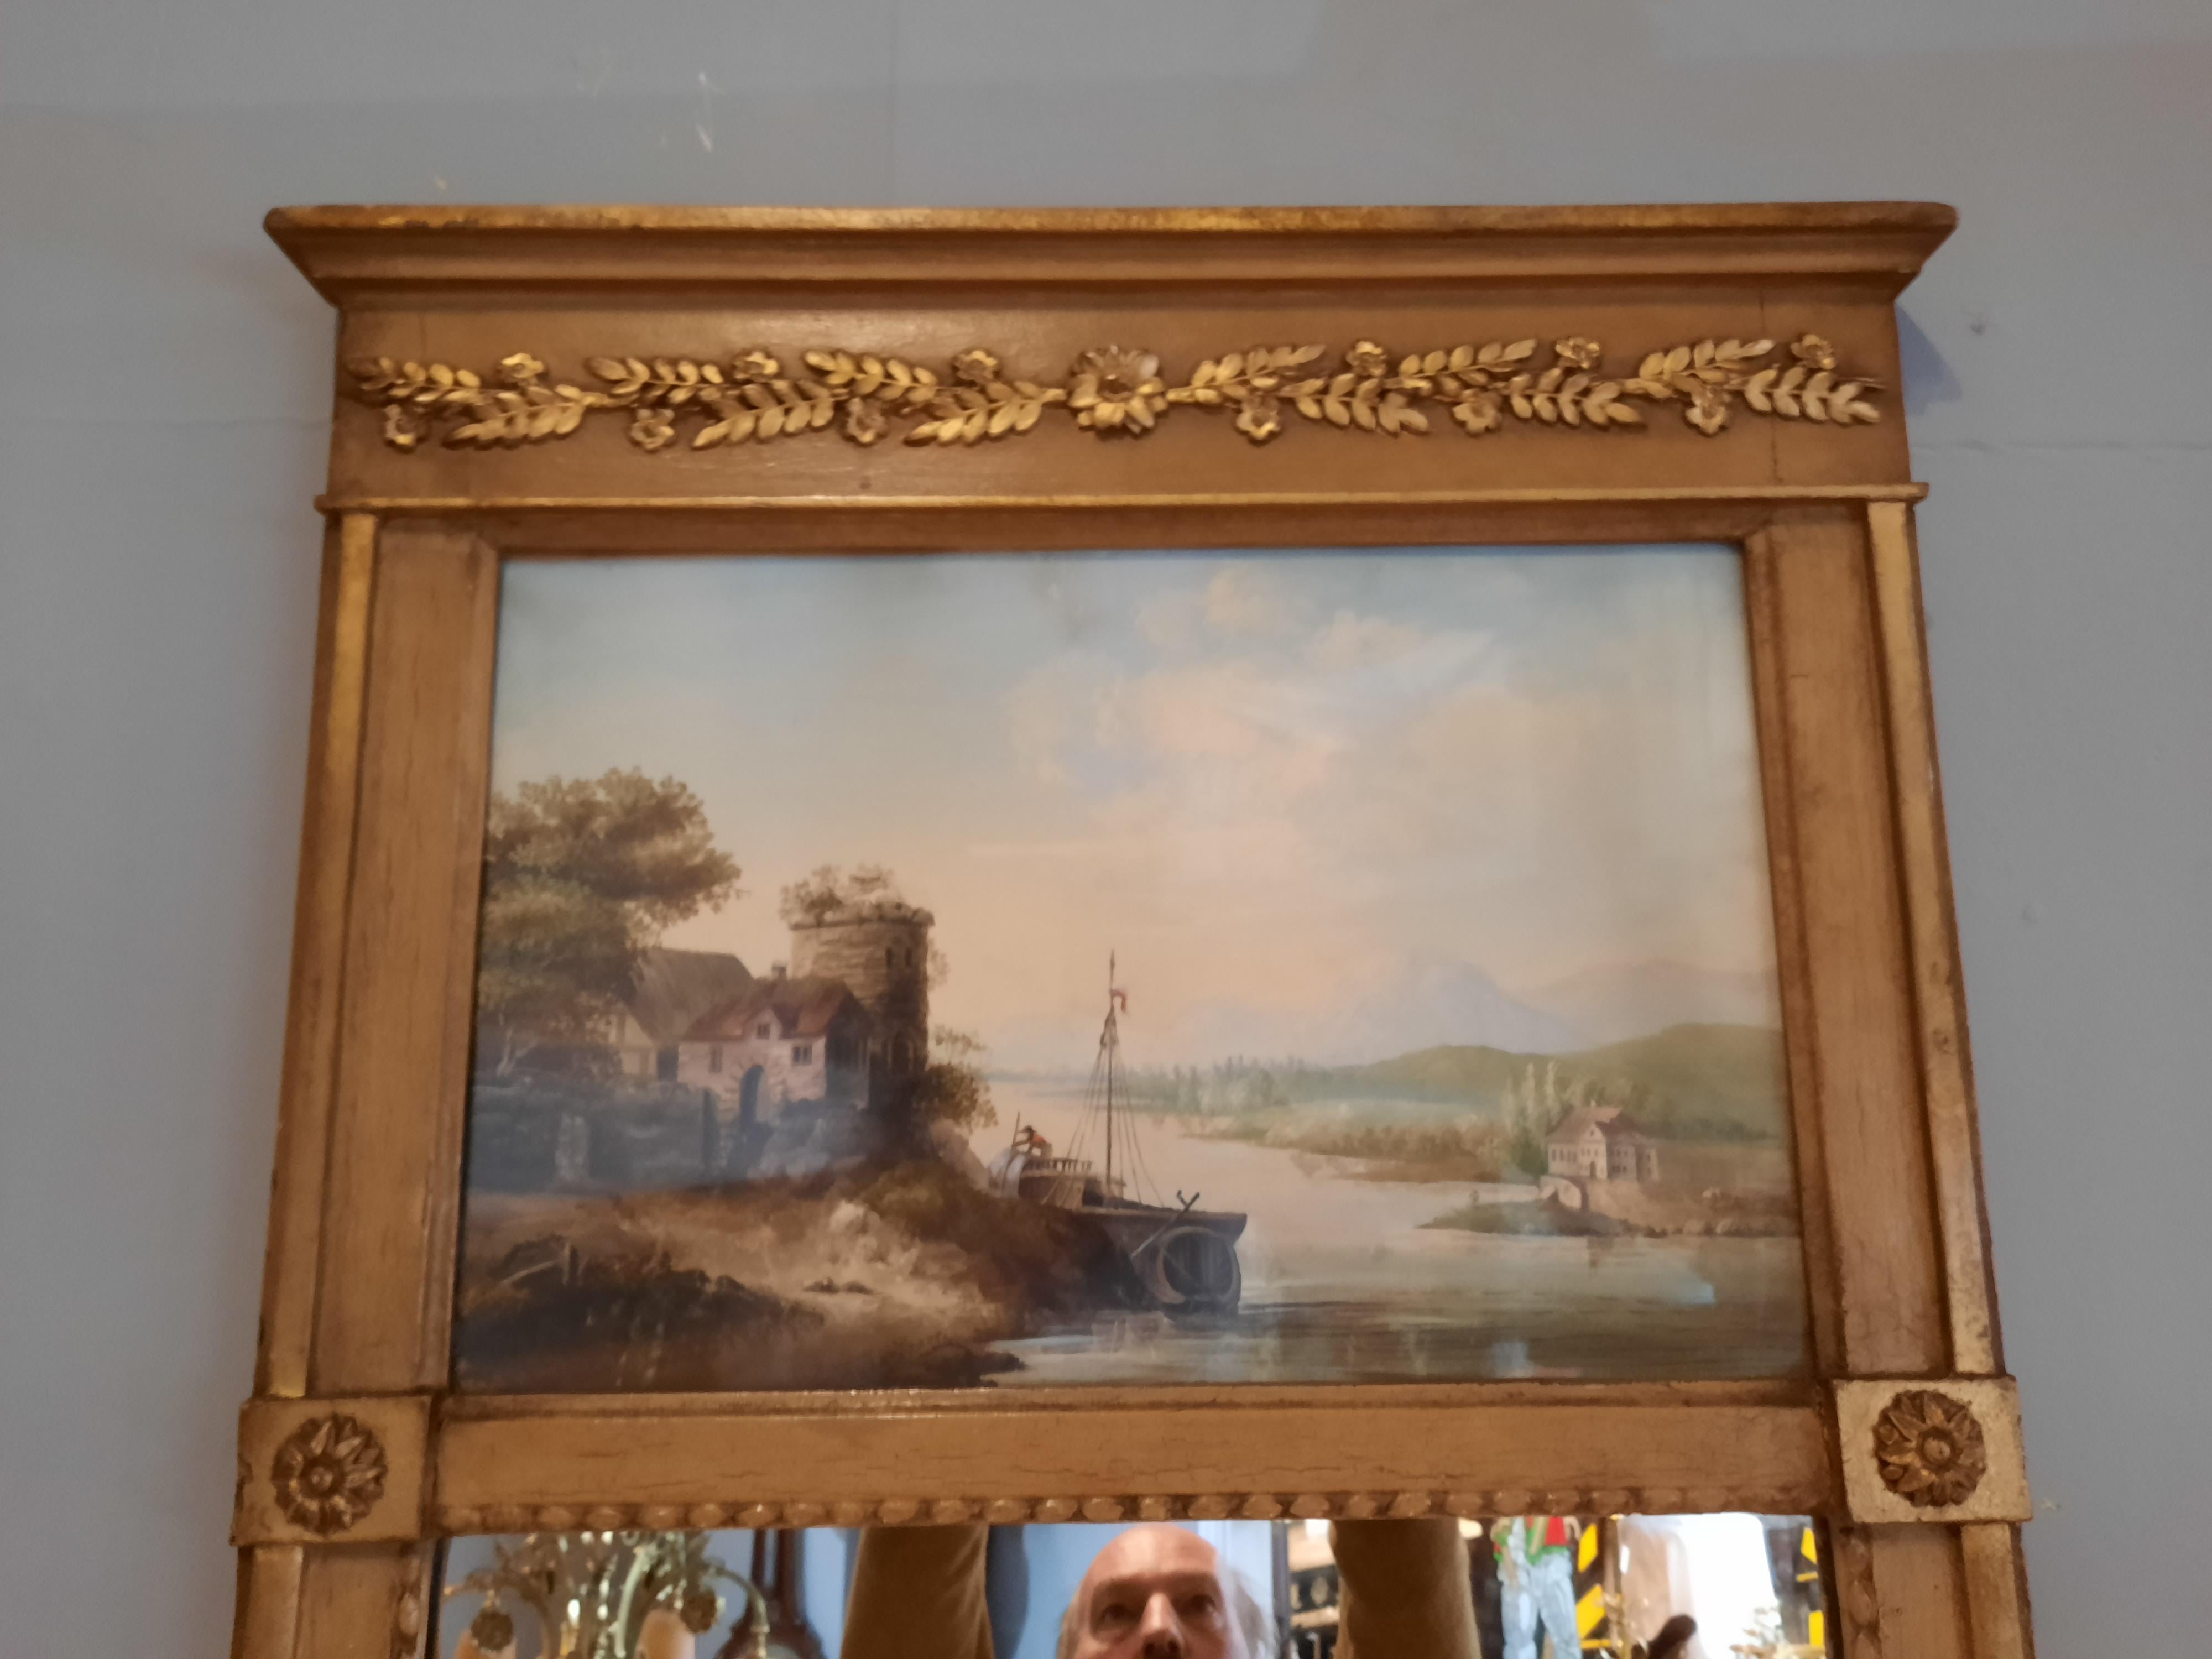 Miroir à trumeau en composite doré, 19ème siècle, la frise avec une décoration feuillagée moulée, au-dessus d'un panneau peint représentant un bateau de rivière dans un paysage de montagnes, au-dessus d'un miroir rectangulaire, avec une bordure